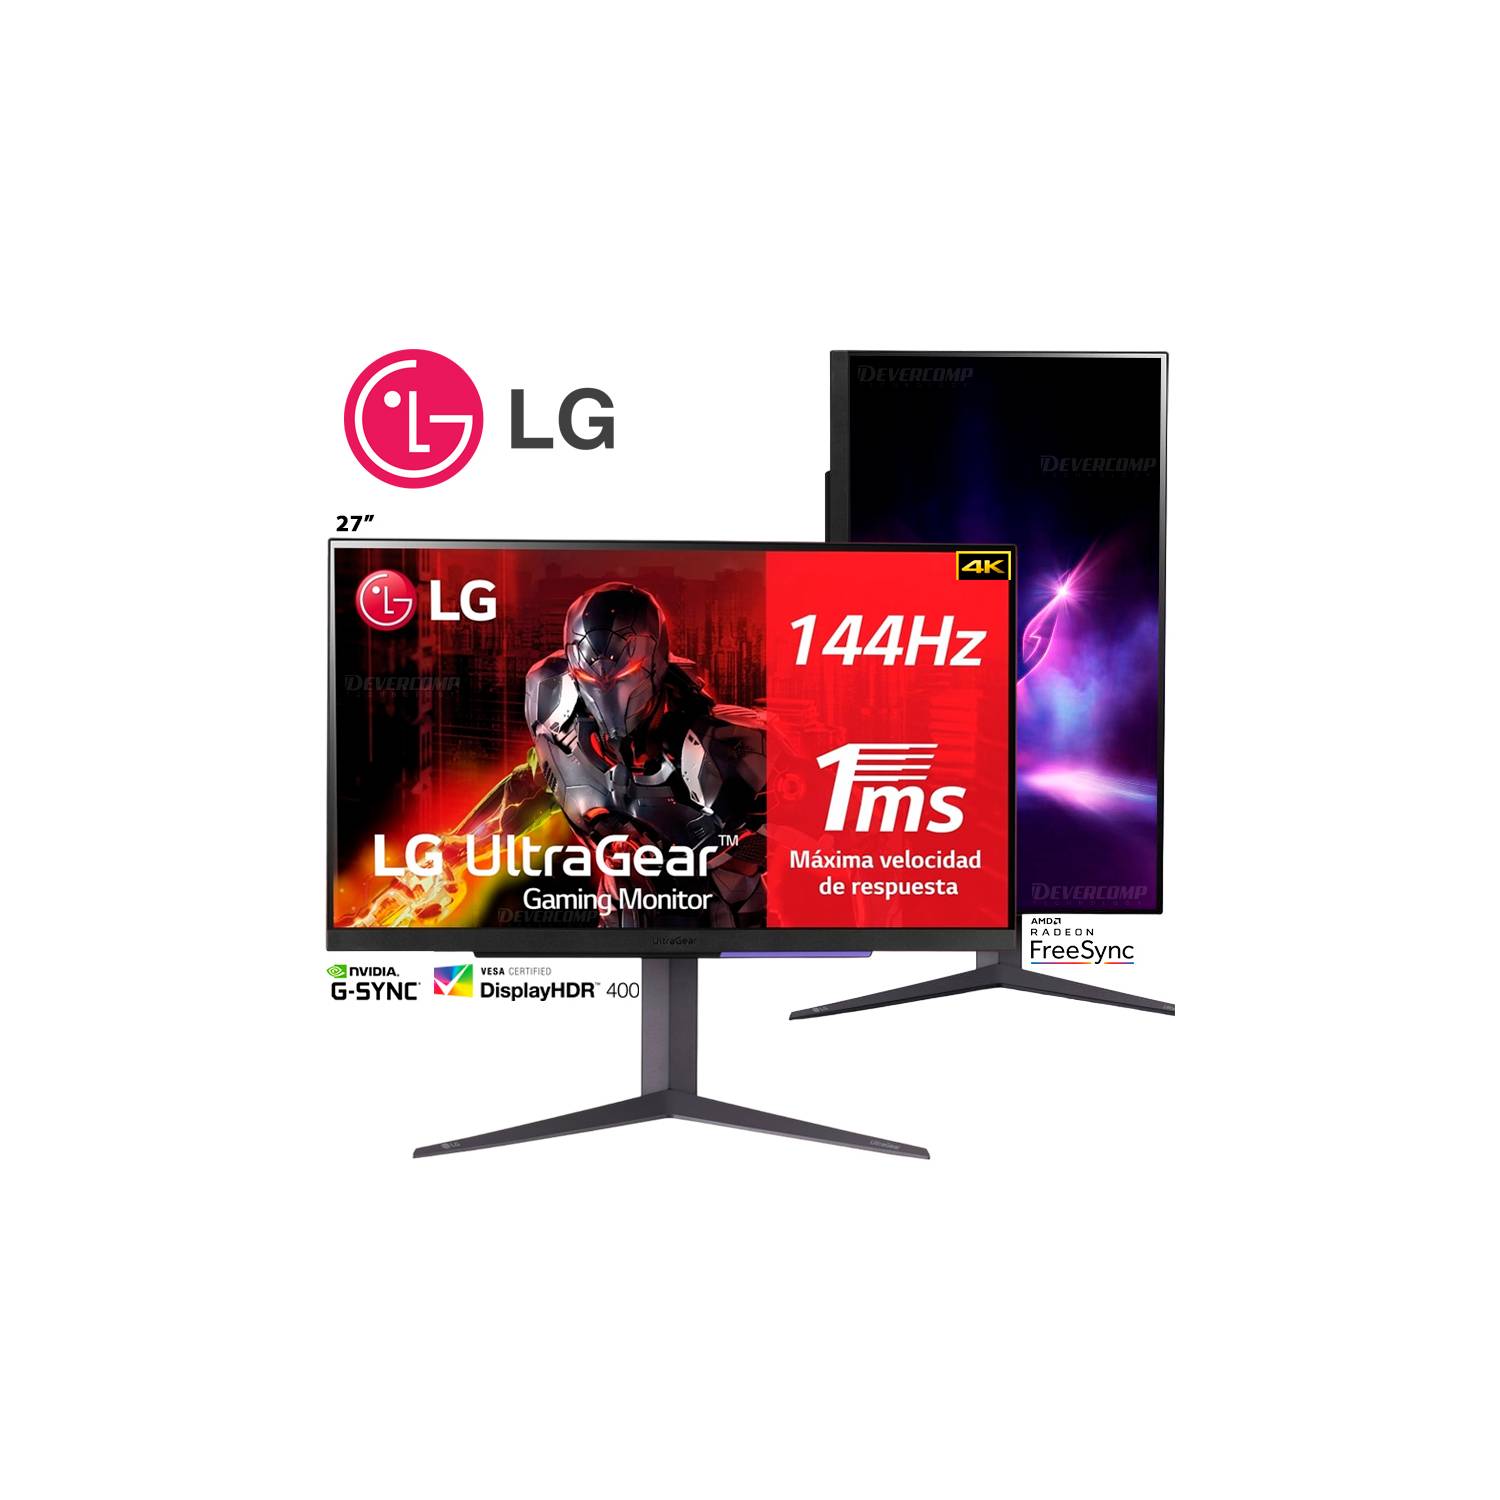 LG MT93, una pequeña Smart TV de 27 pulgadas